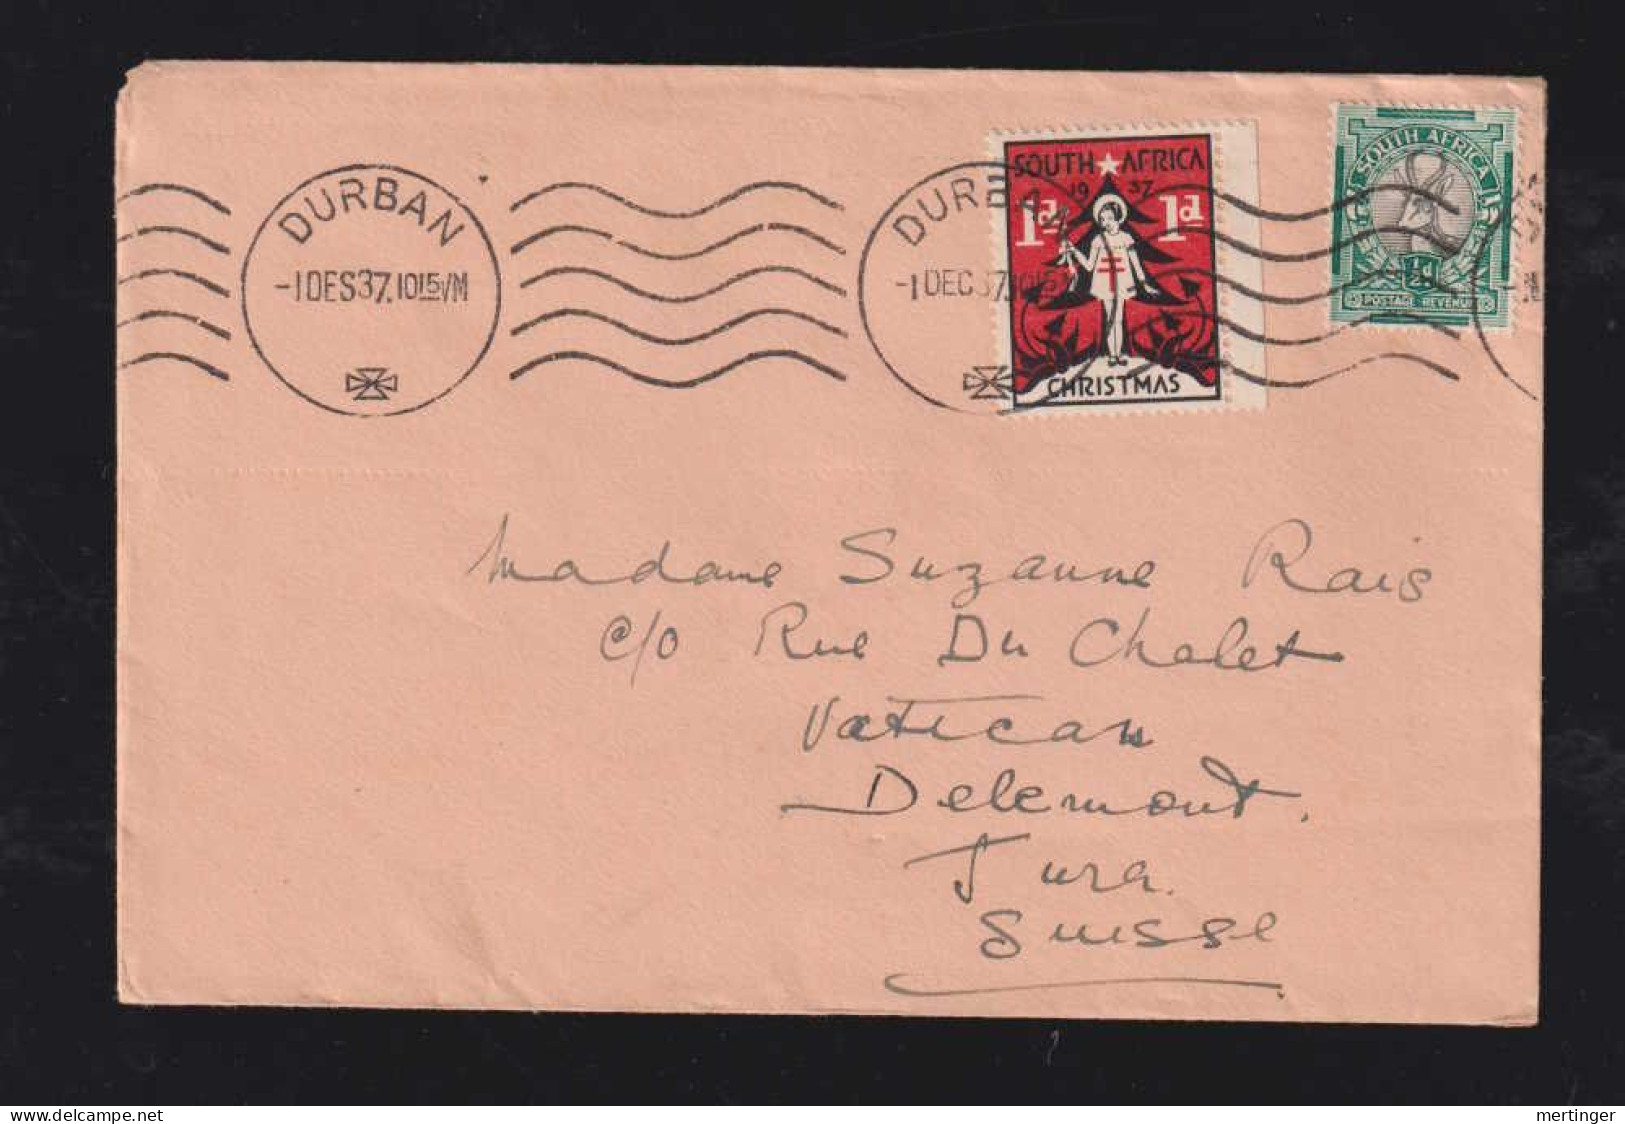 South Africa 1937 Printed Matter DURBAN X DELEMONT Switzerland Christmas Cinderella - Briefe U. Dokumente